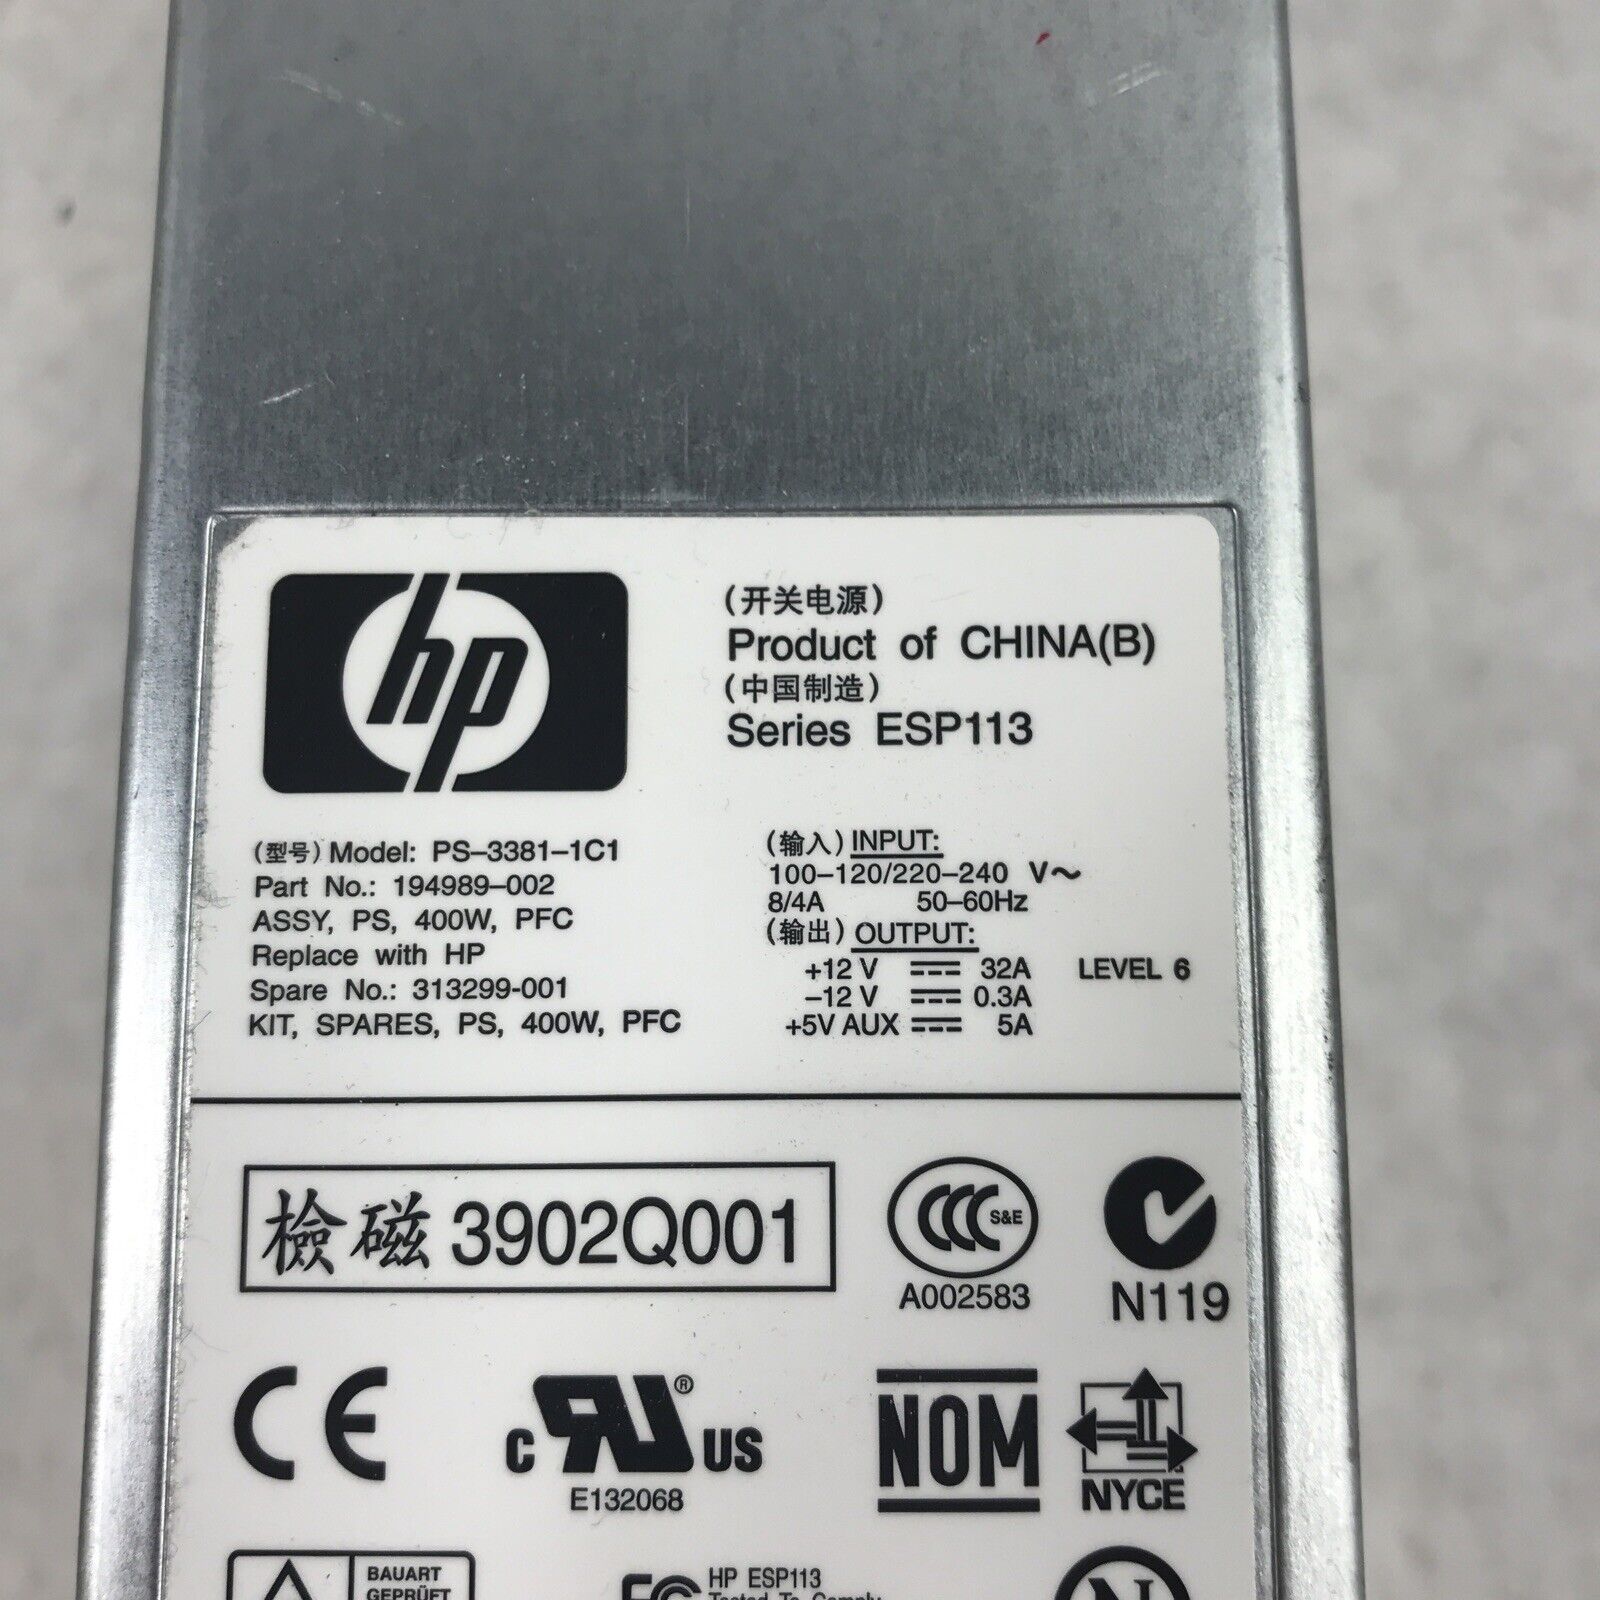 (Lot of 2) HP ESP113 400W 60Hz 240V PS-3381-1C1 Server Power Supply